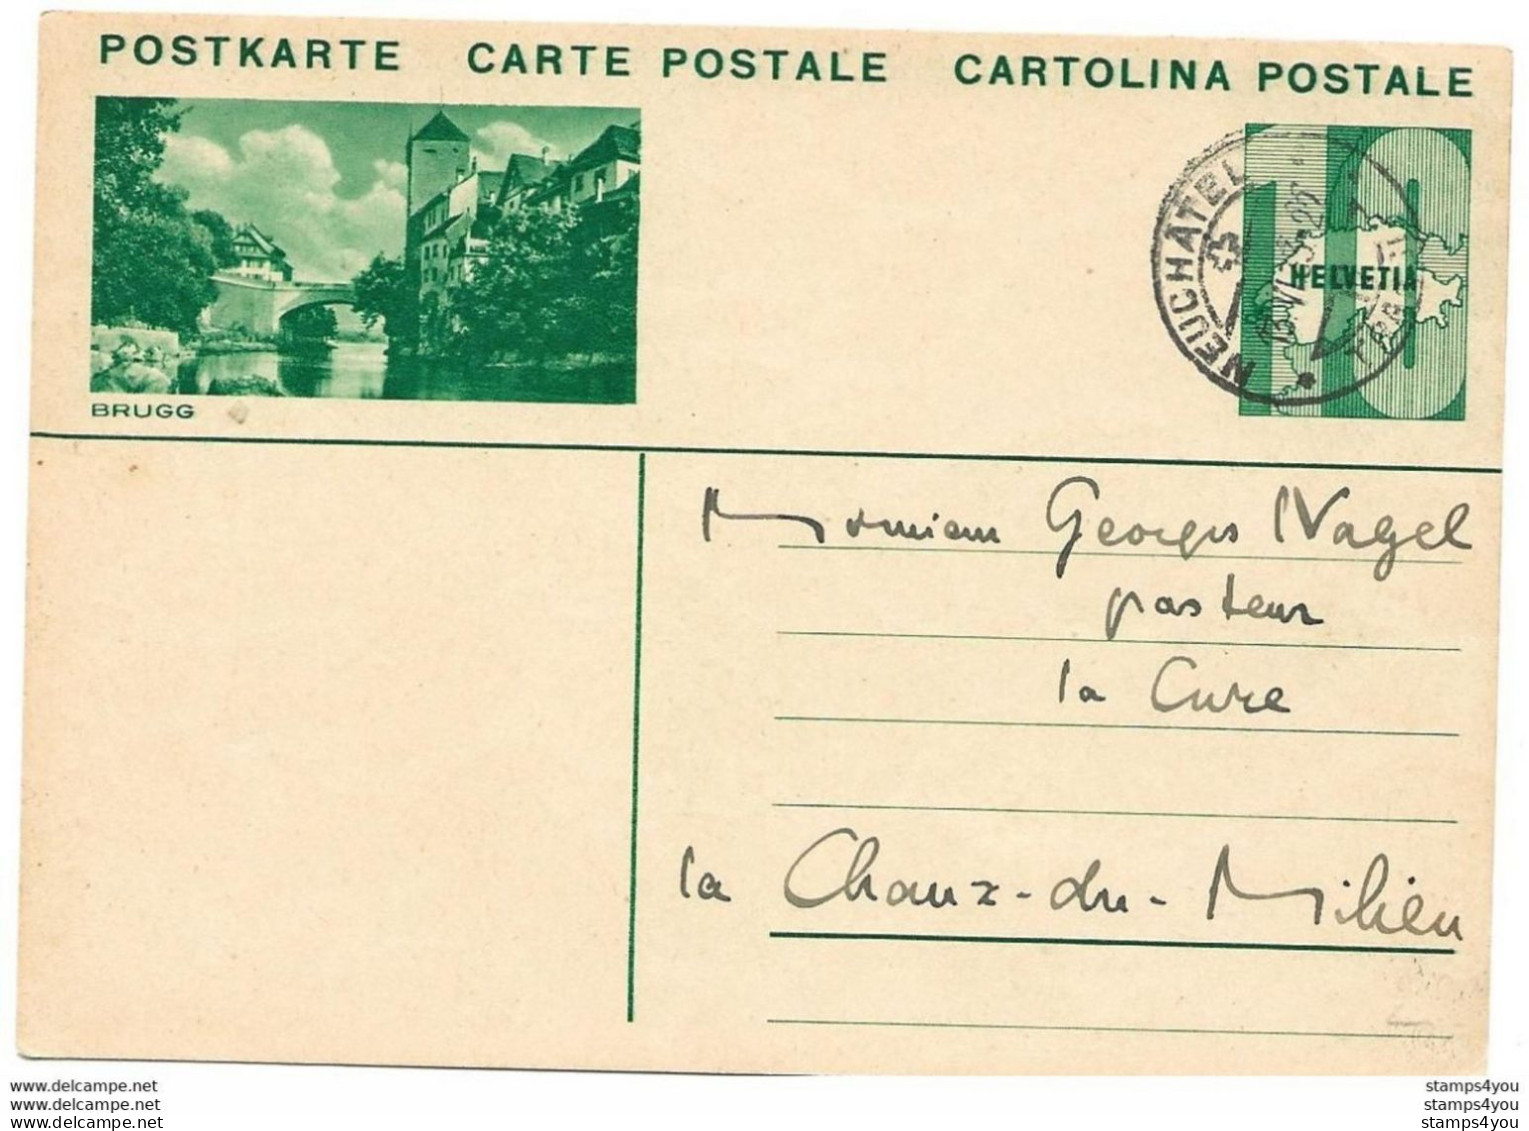 3 - 39 - Entier Postal Avec Illustration "Brugg" Avec Cachet à Date Neuchâtel 1933 - Enteros Postales